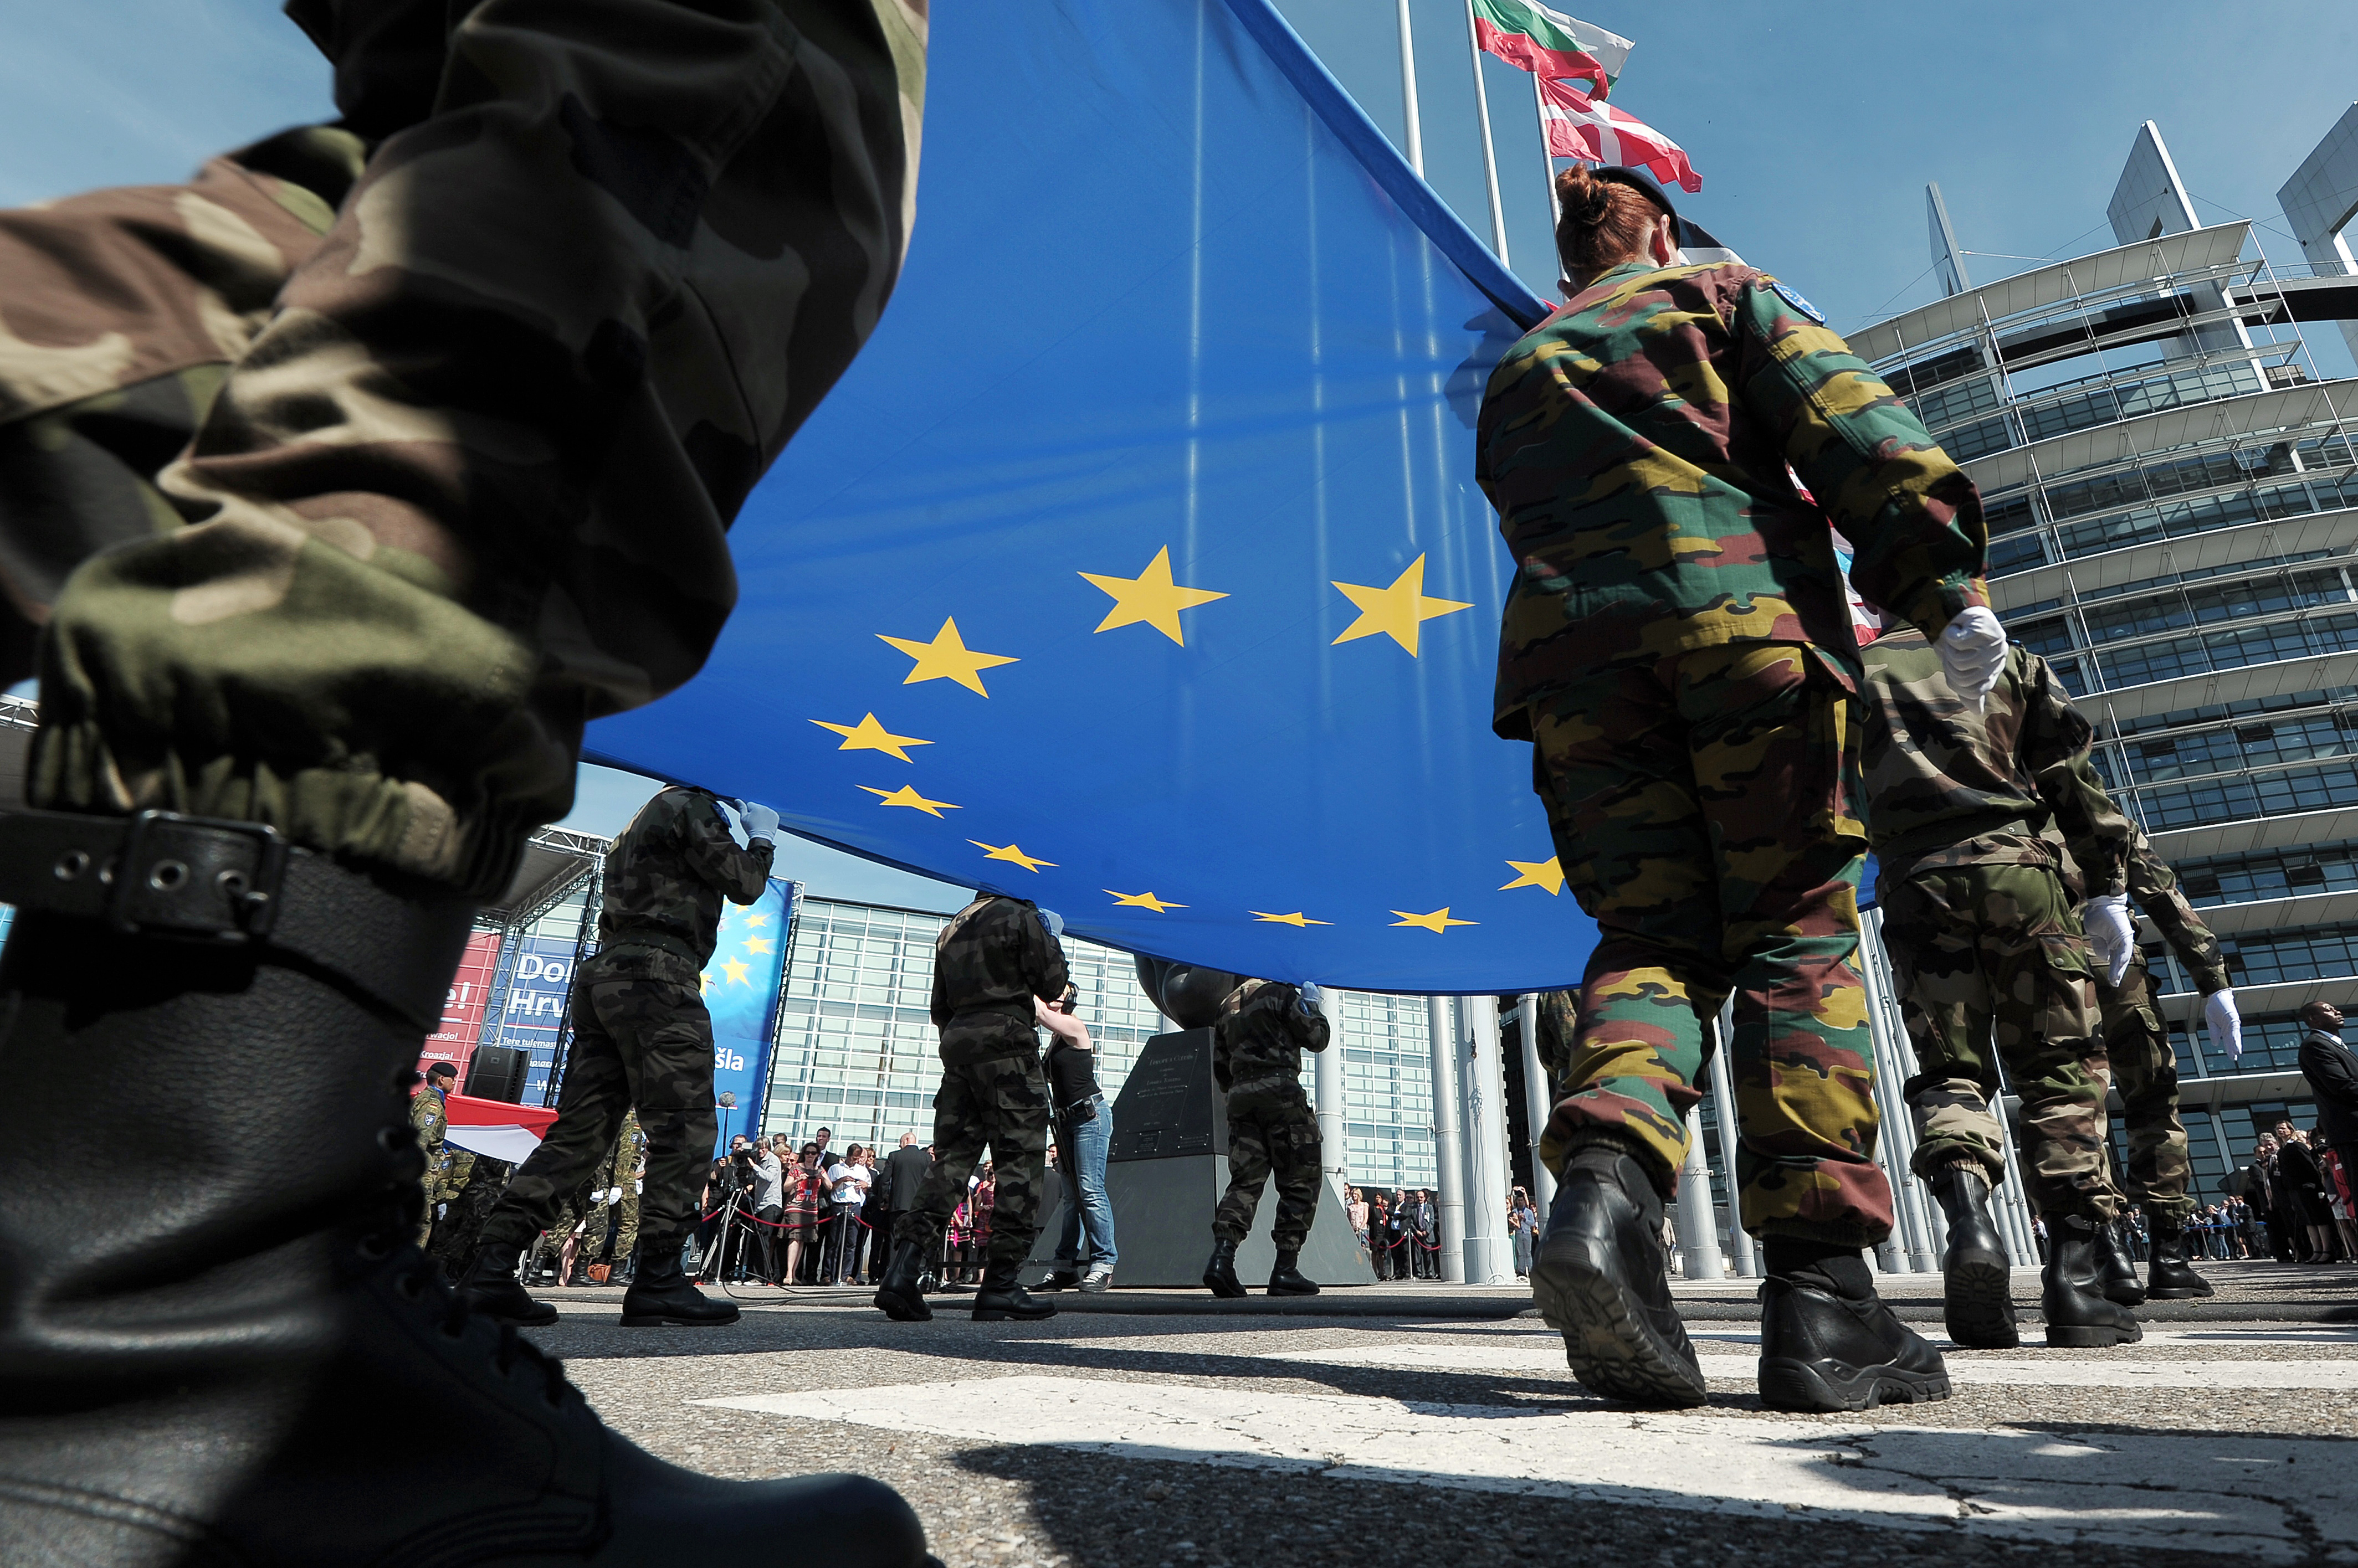 EU-Verteidigungsfonds geplant: Mehr als 5 Milliarden Euro sollen nach 2020 jährlich bereitstehen